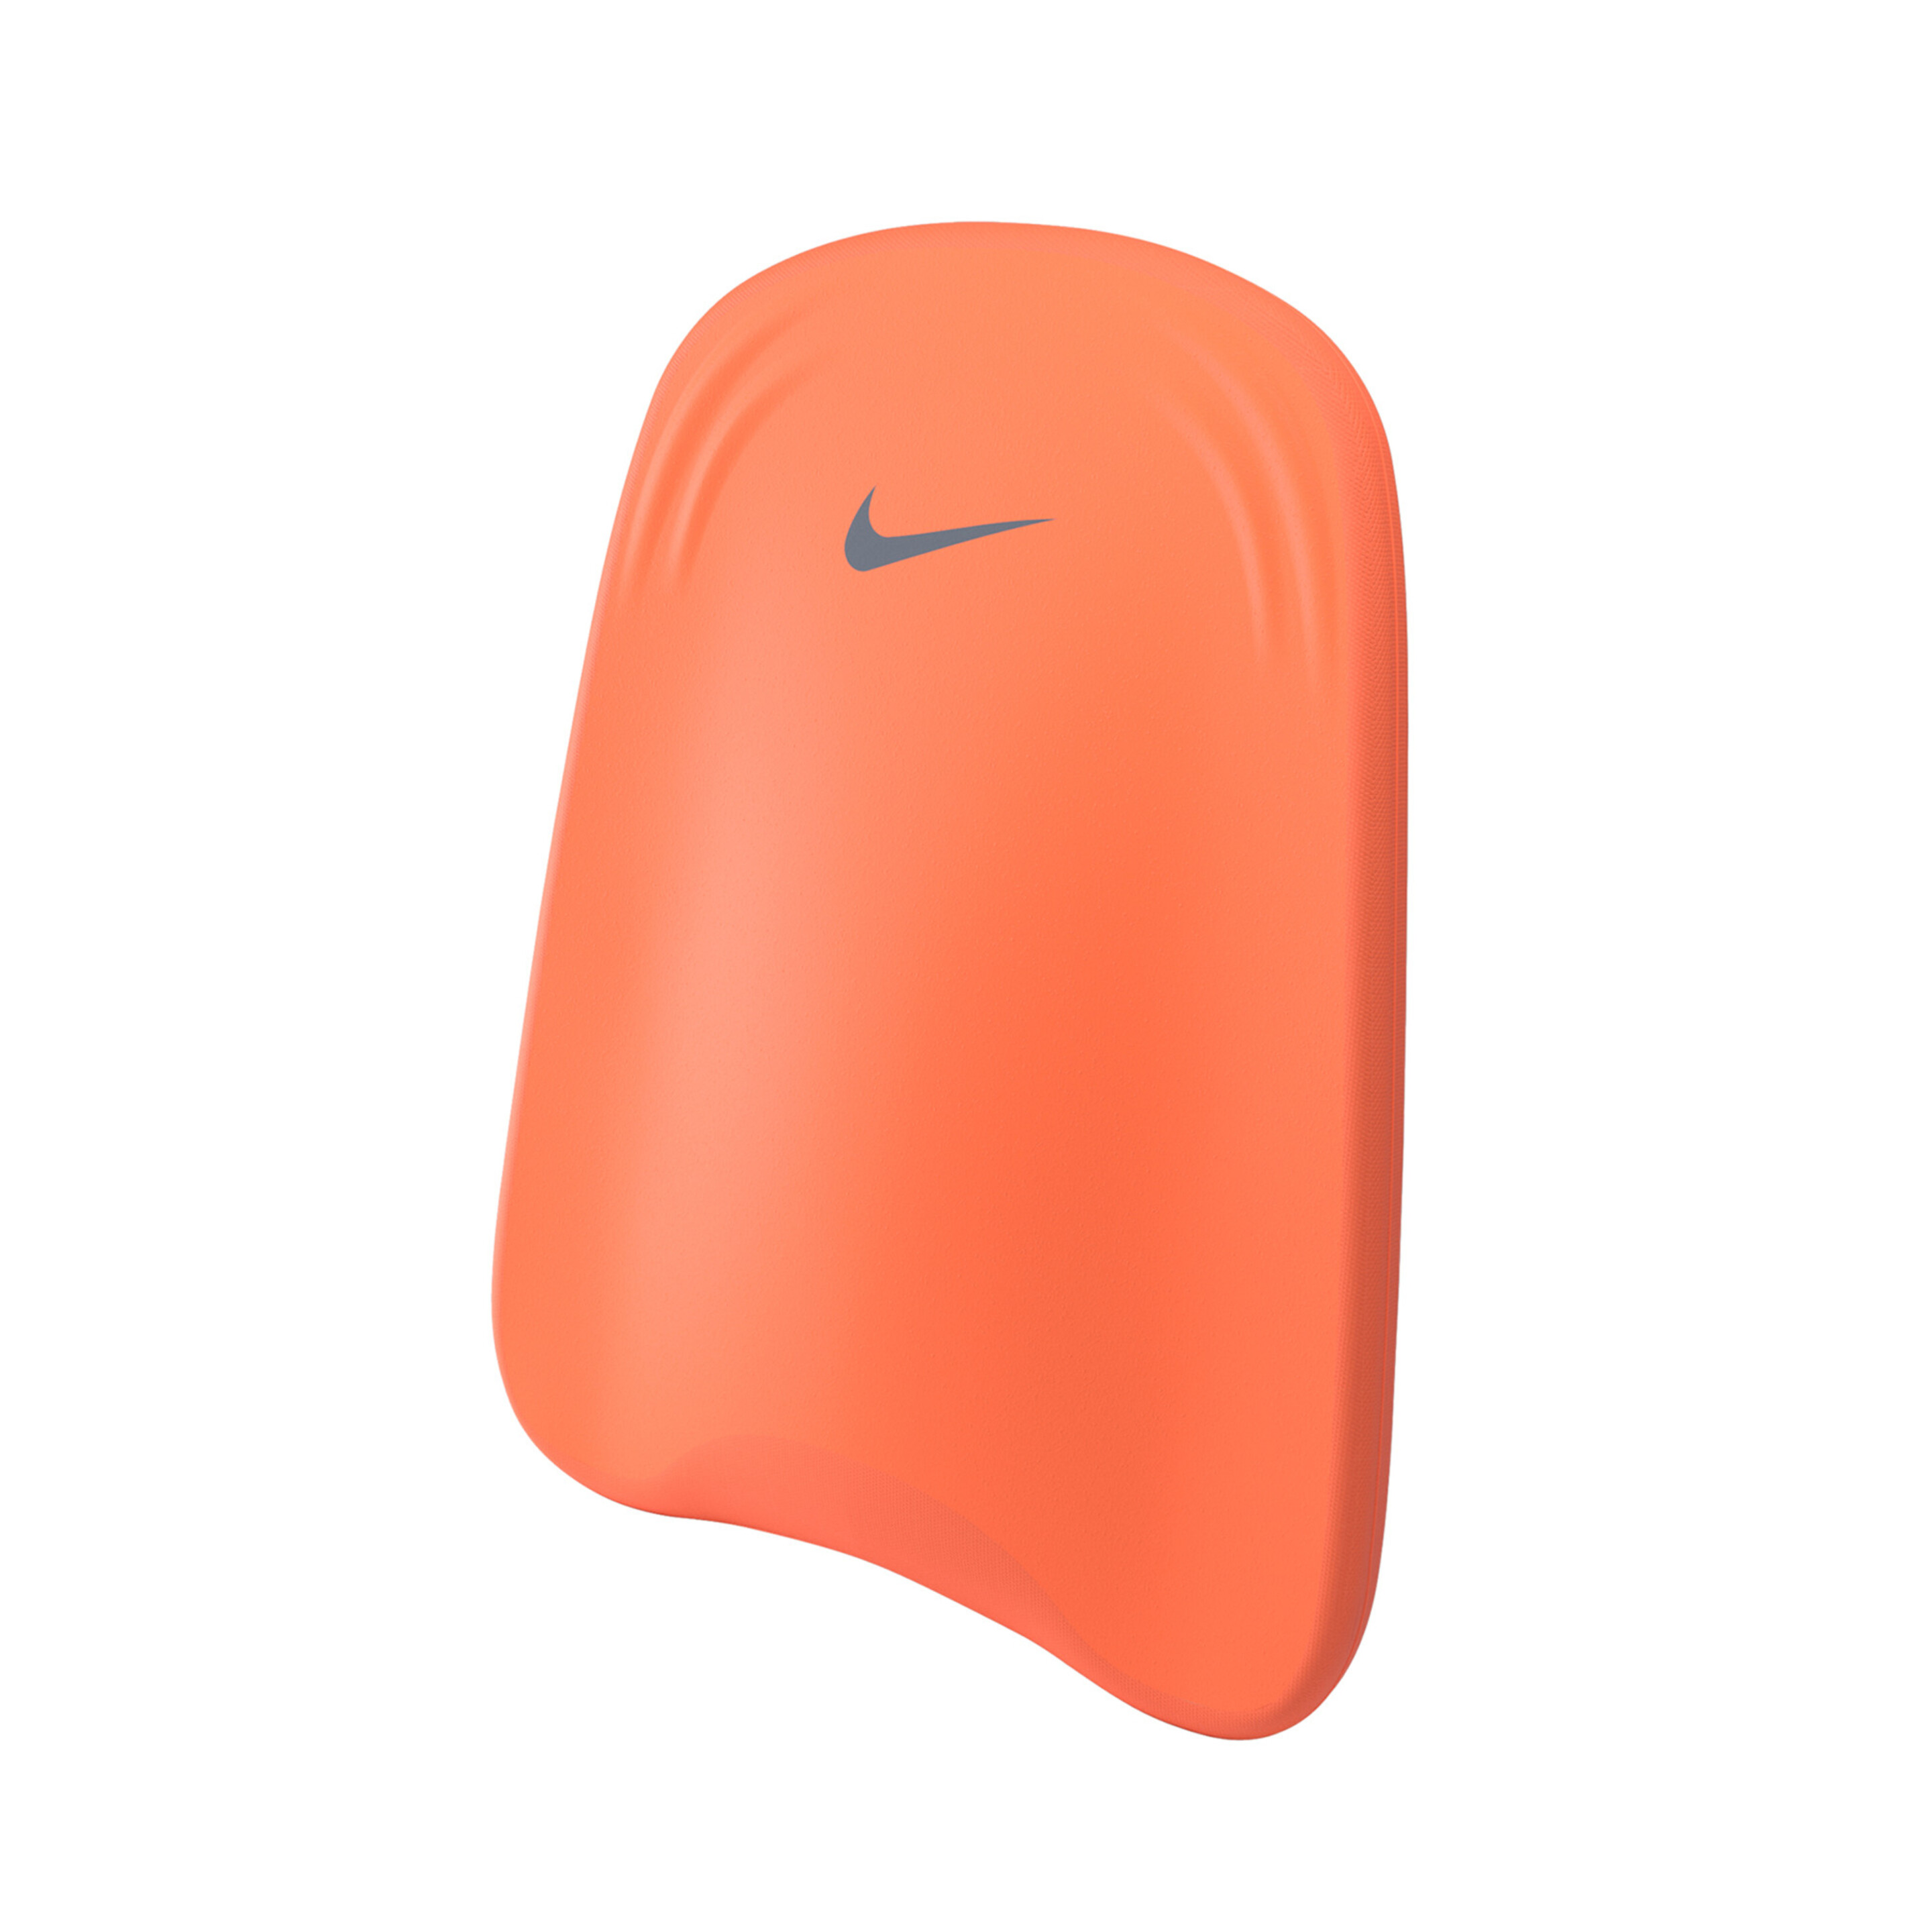 Tabla De Natación Nike - Naranja - Tablas De Natación Unisex  MKP